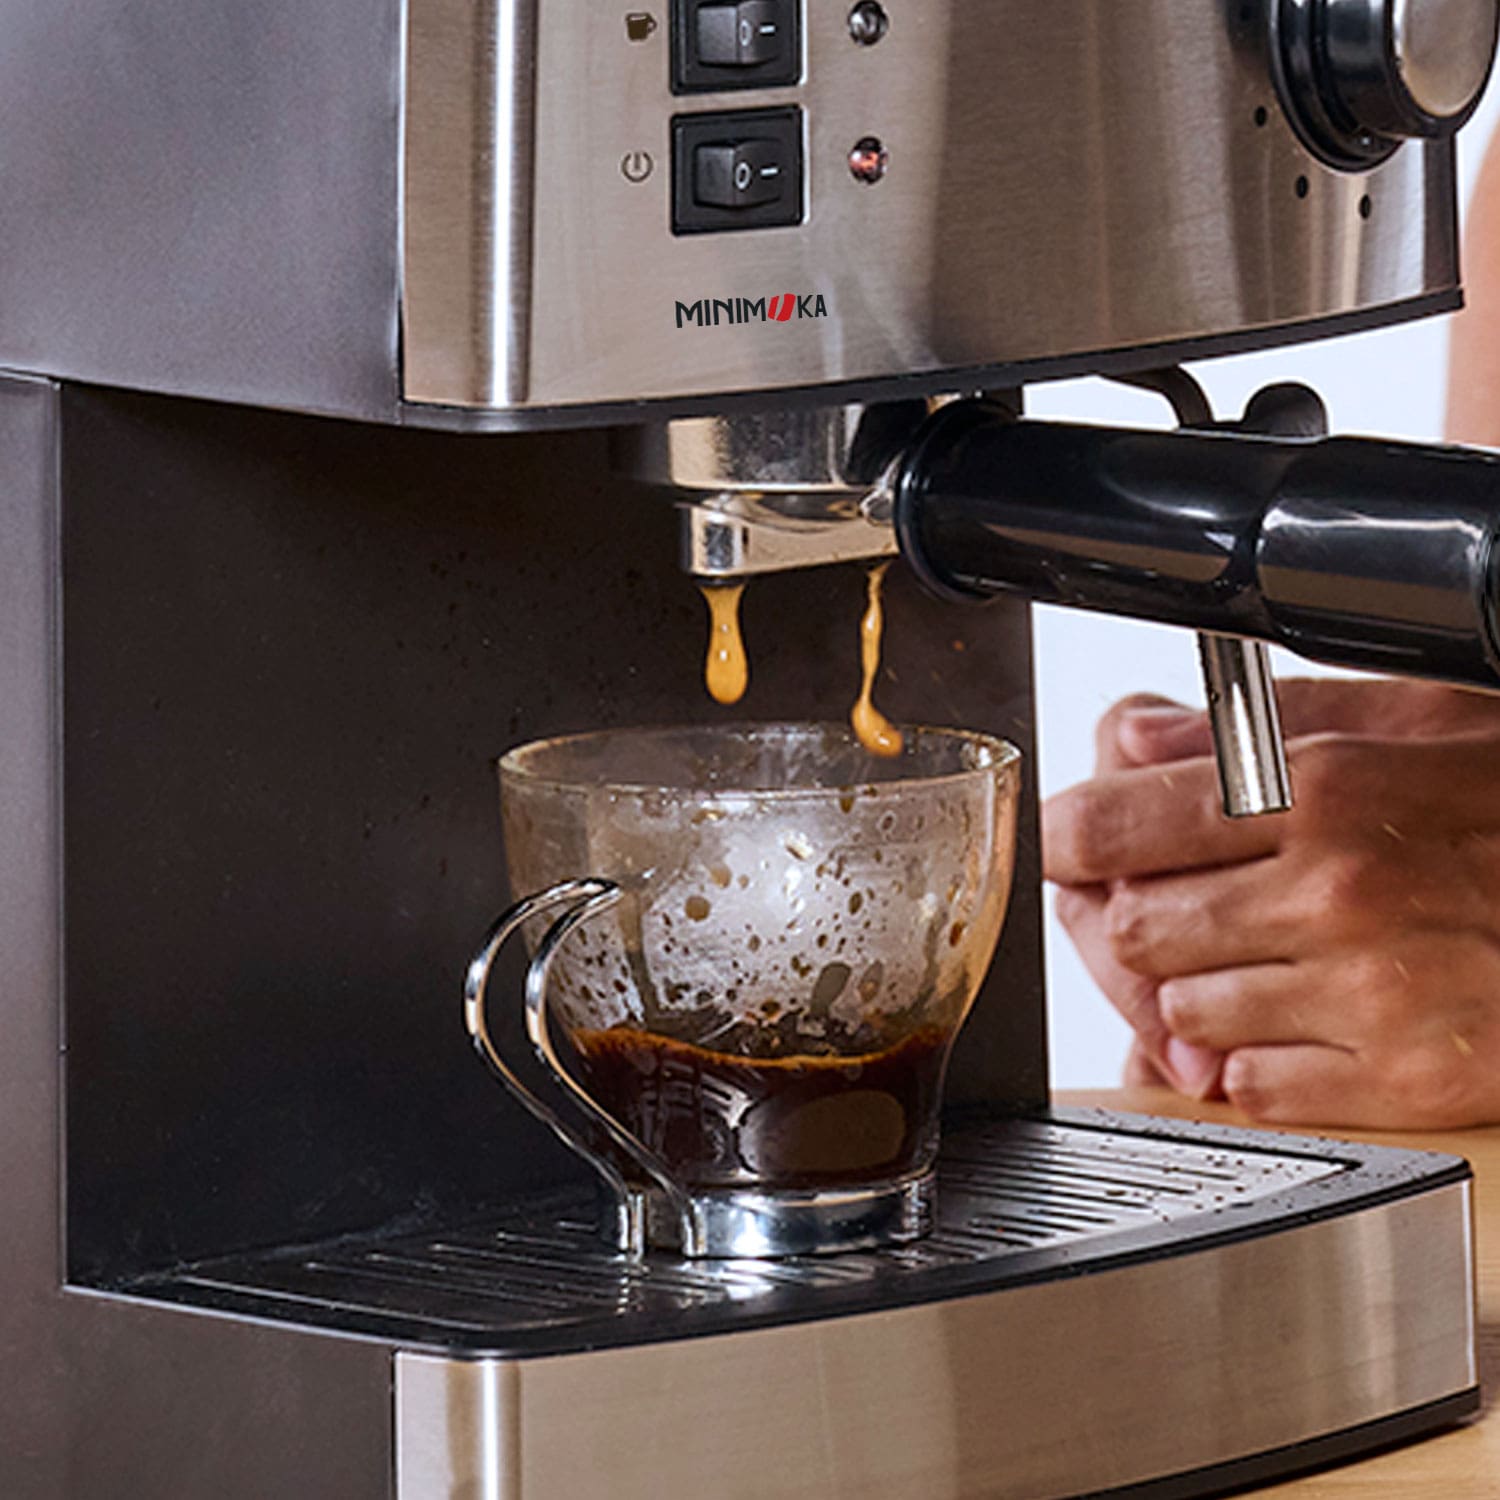 Minimoka - Cafetera espresso, 2 cacillos para 1 o 2 cafés, 15 bar, 850W, Vaporizador, 1.6L, Café molido o monodosis, Bandeja calienta tazas, Filtro Extra Cream